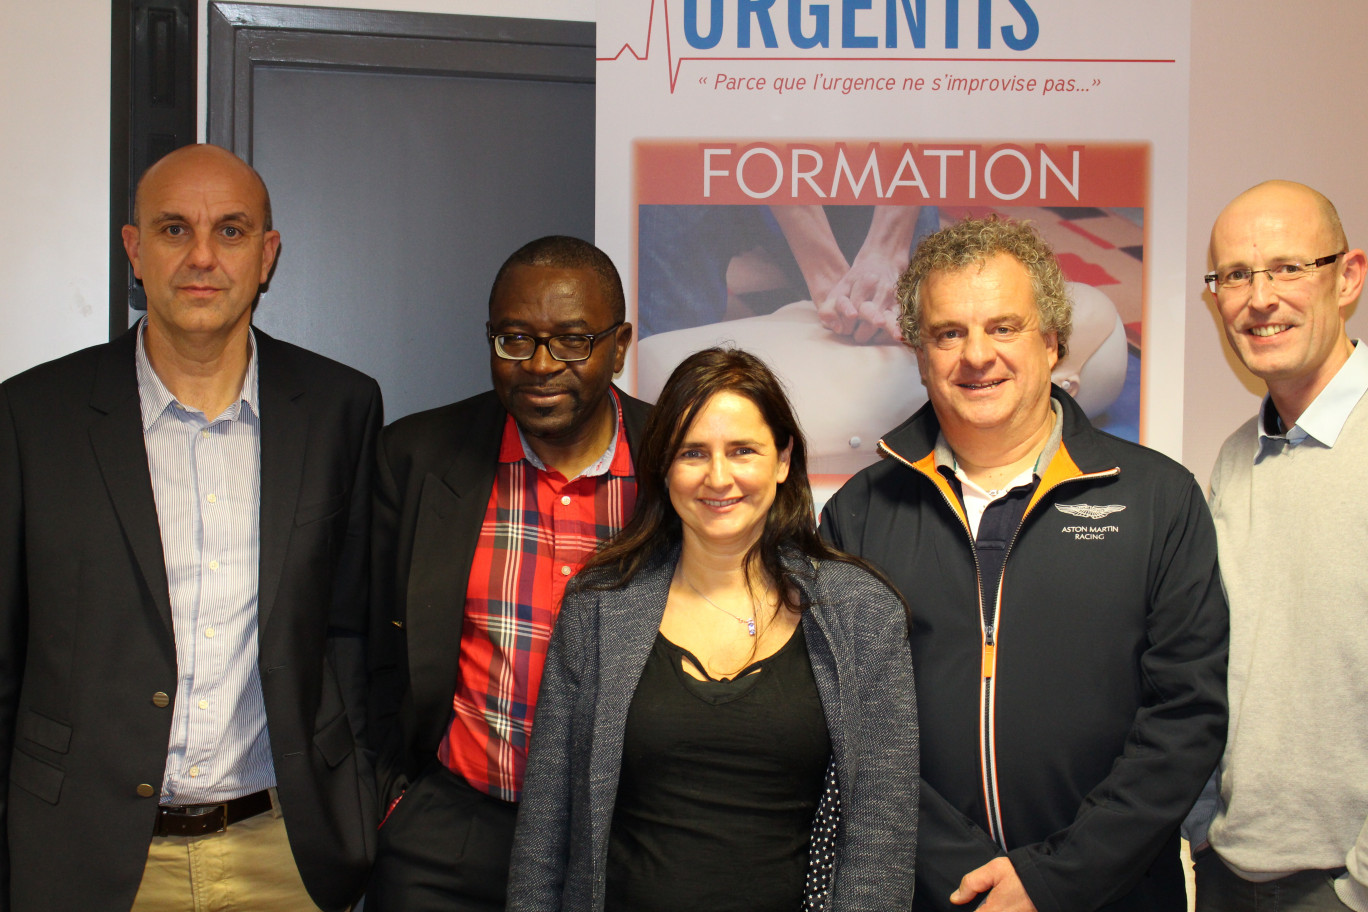 Le docteur Thierry Mraovic et l'quipe d'Urgentis en compagnie du docteur Claude Kouakam, cardiologue au CHRU de Lille.